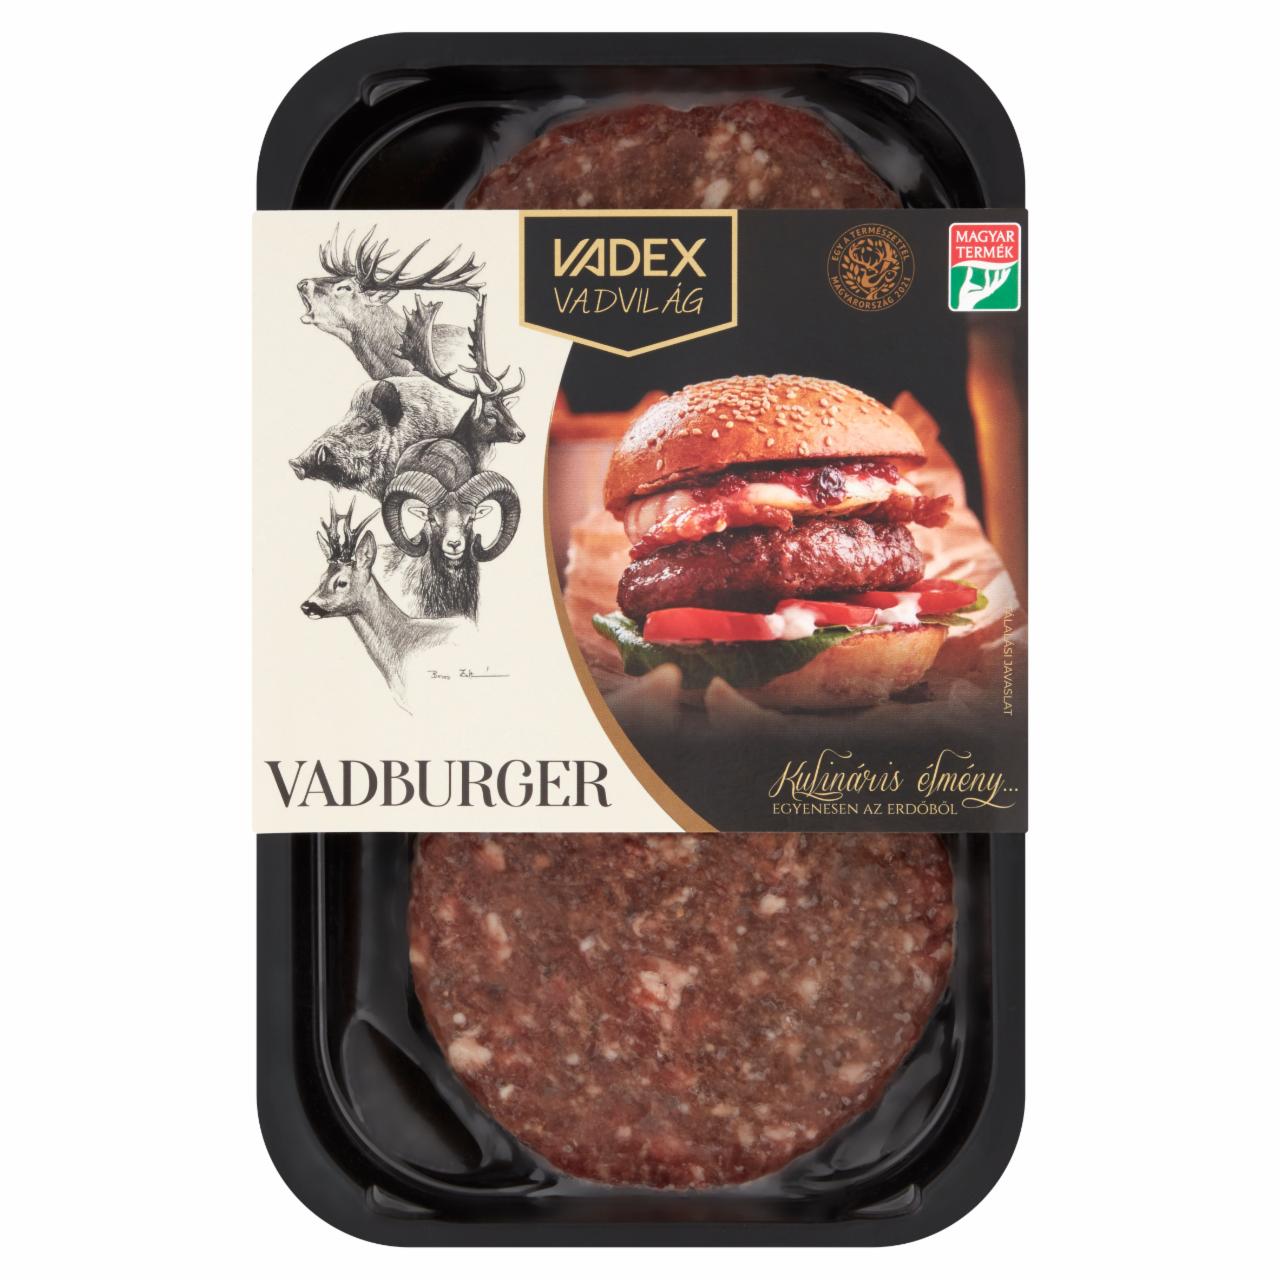 Képek - Vadex Vadvilág gyorsfagyasztott vadburger húspogácsa vegyes vadhúsból 2 db 250 g